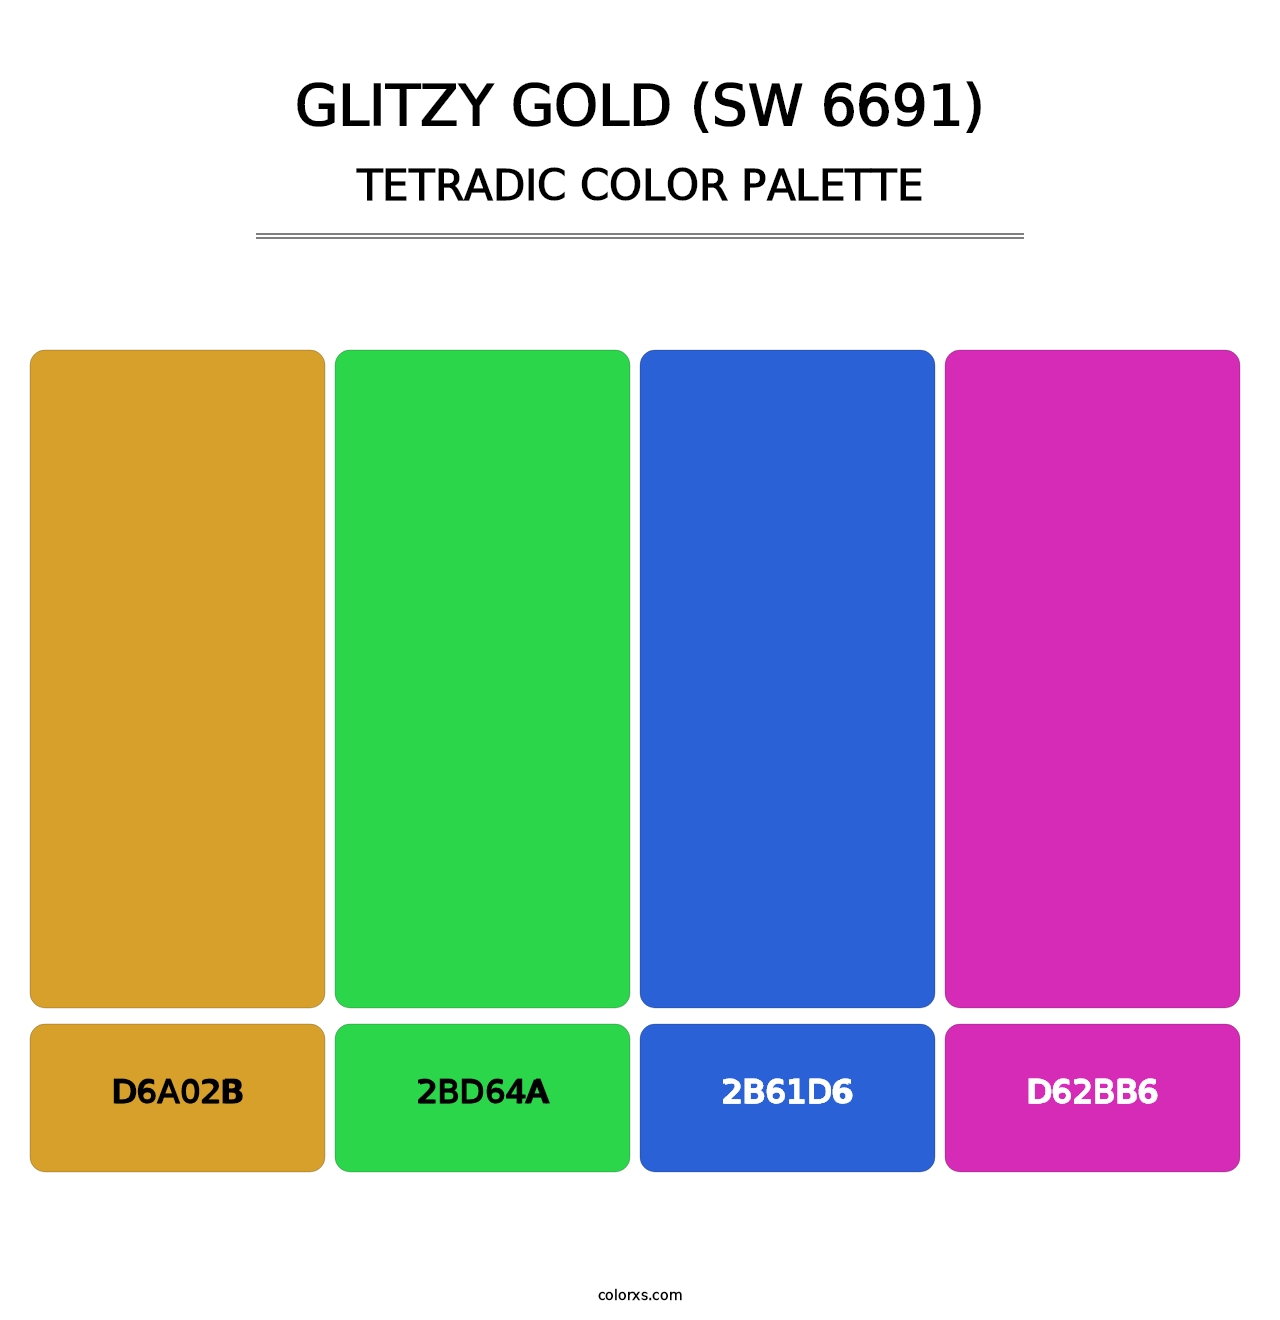 Glitzy Gold (SW 6691) - Tetradic Color Palette